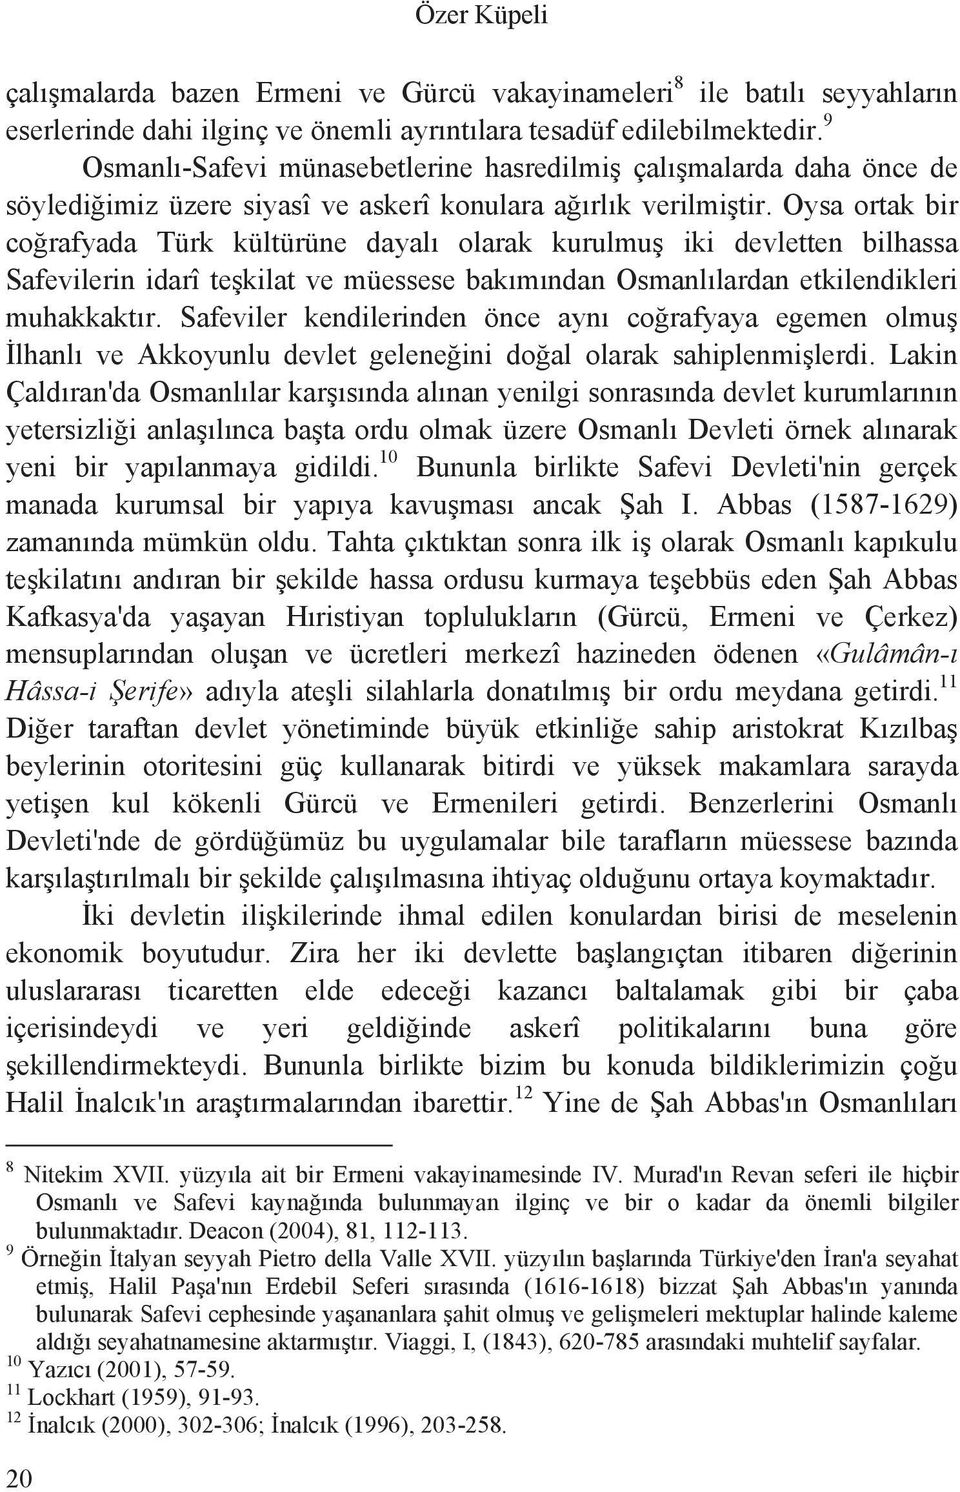 Oysa ortak bir co rafyada Türk kültürüne dayal olarak kurulmu iki devletten bilhassa Safevilerin idarî te kilat ve müessese bak m ndan Osmanl lardan etkilendikleri muhakkakt r.